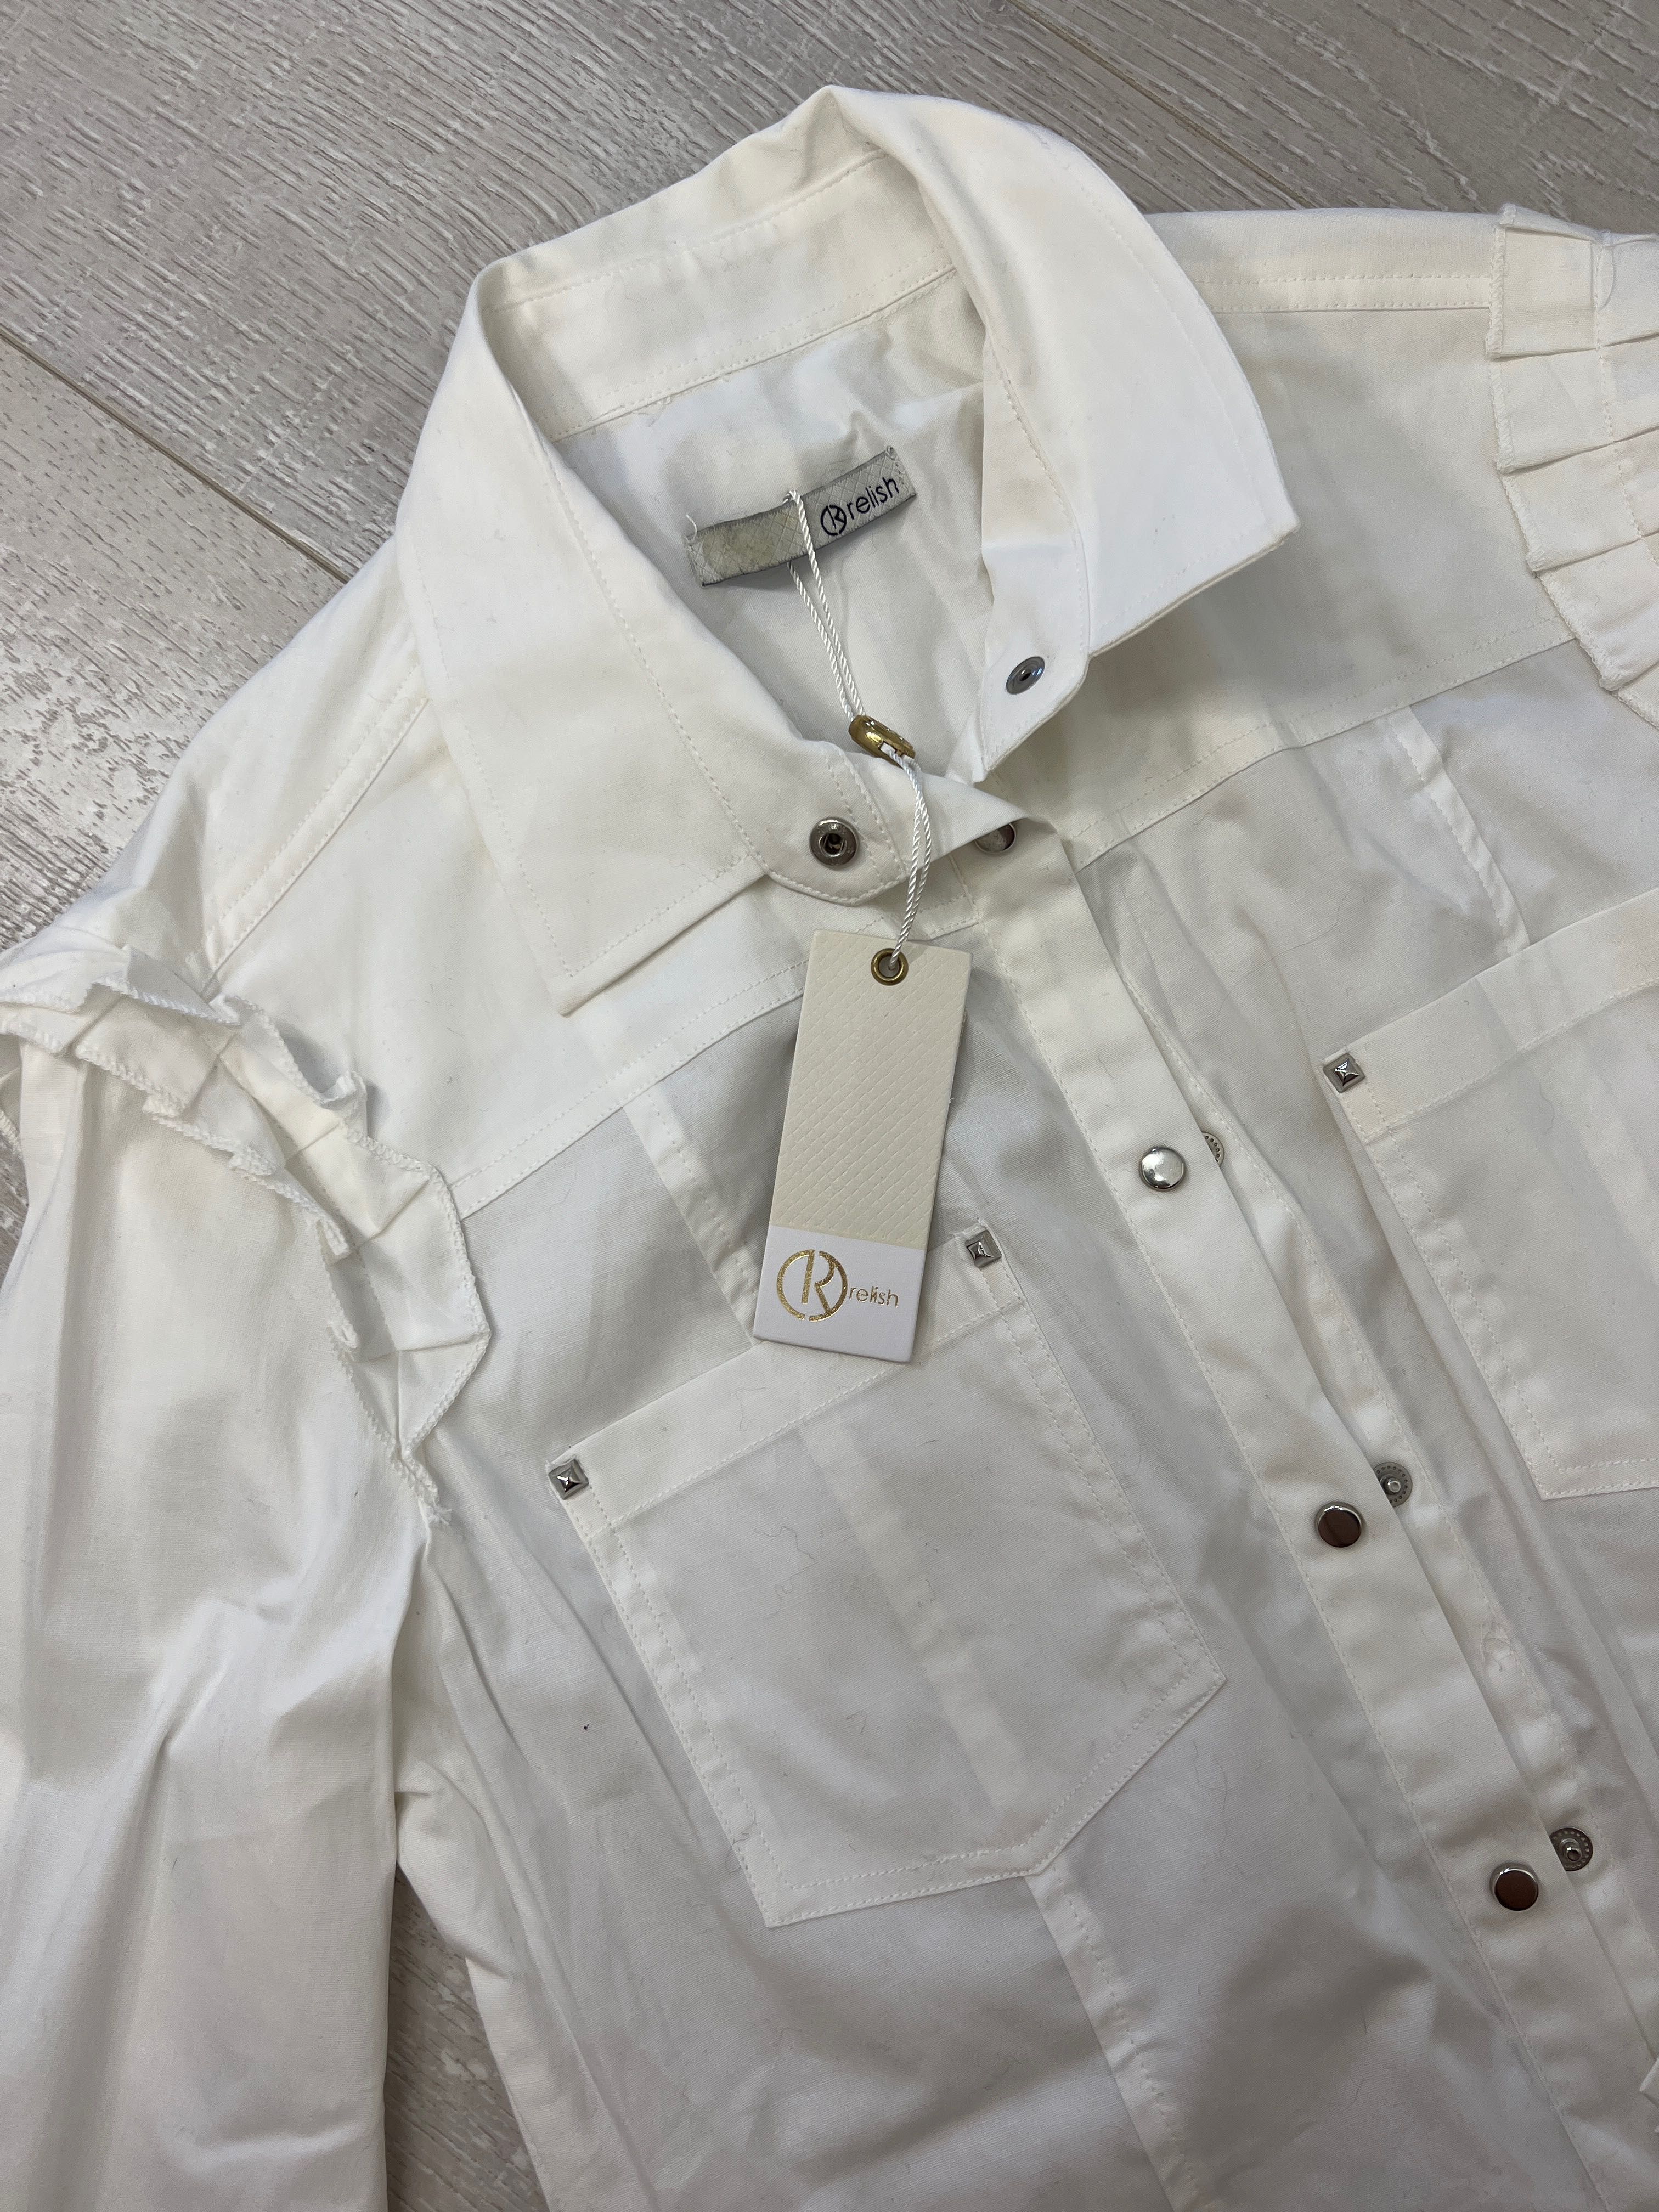 Біла жіноча рубашка бренду Relish. 40р. Нова, з біркою!